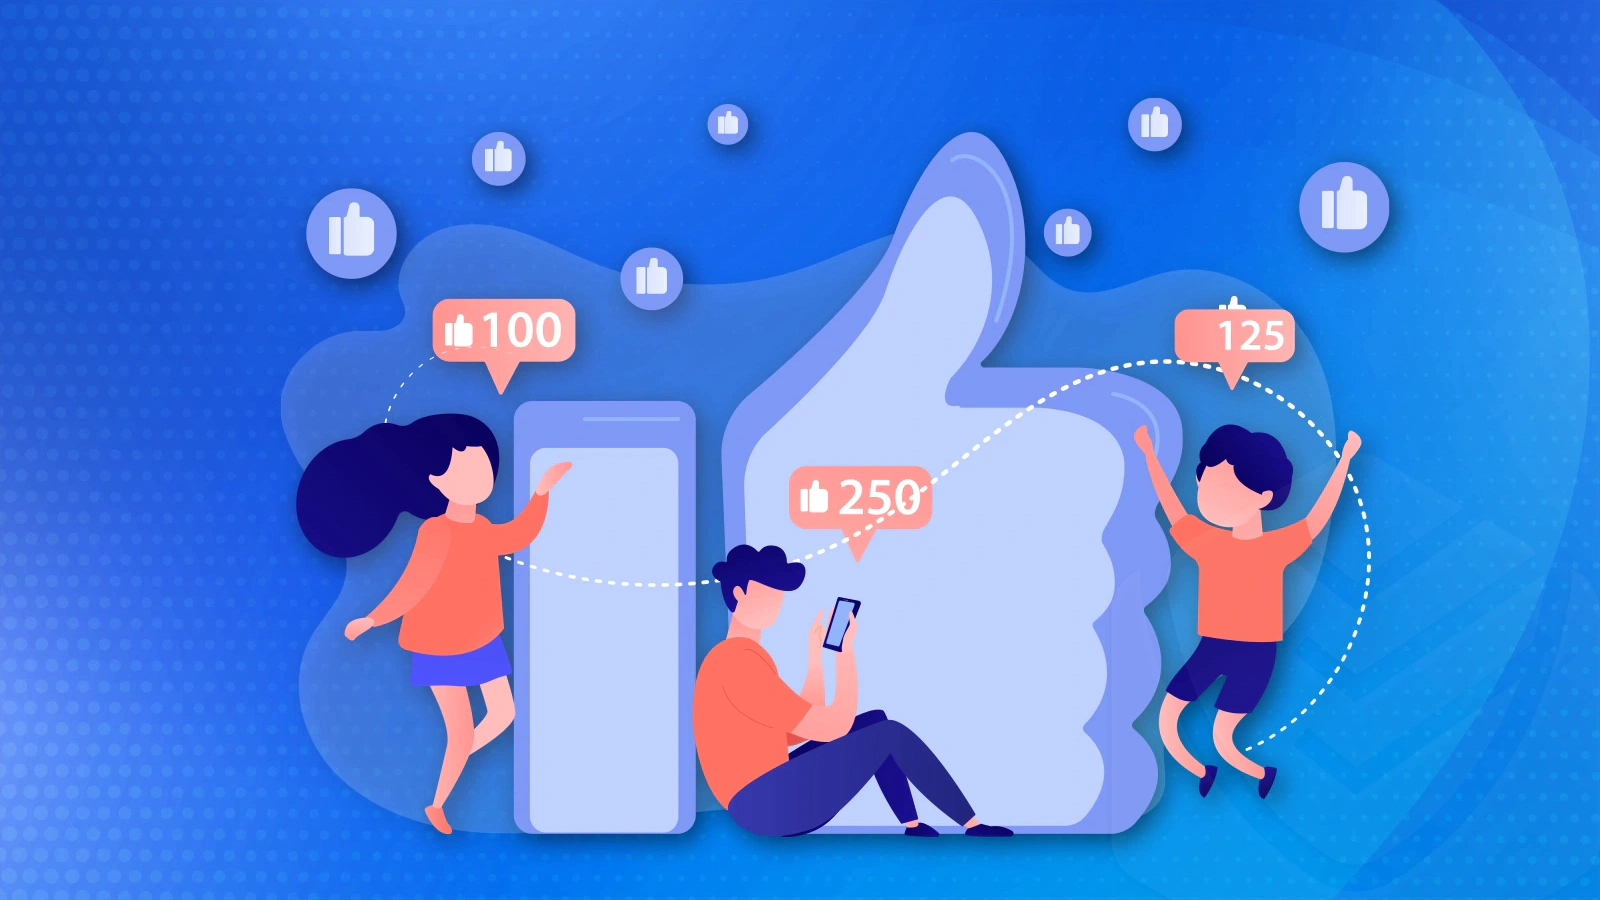 Social media for teens - Facebook